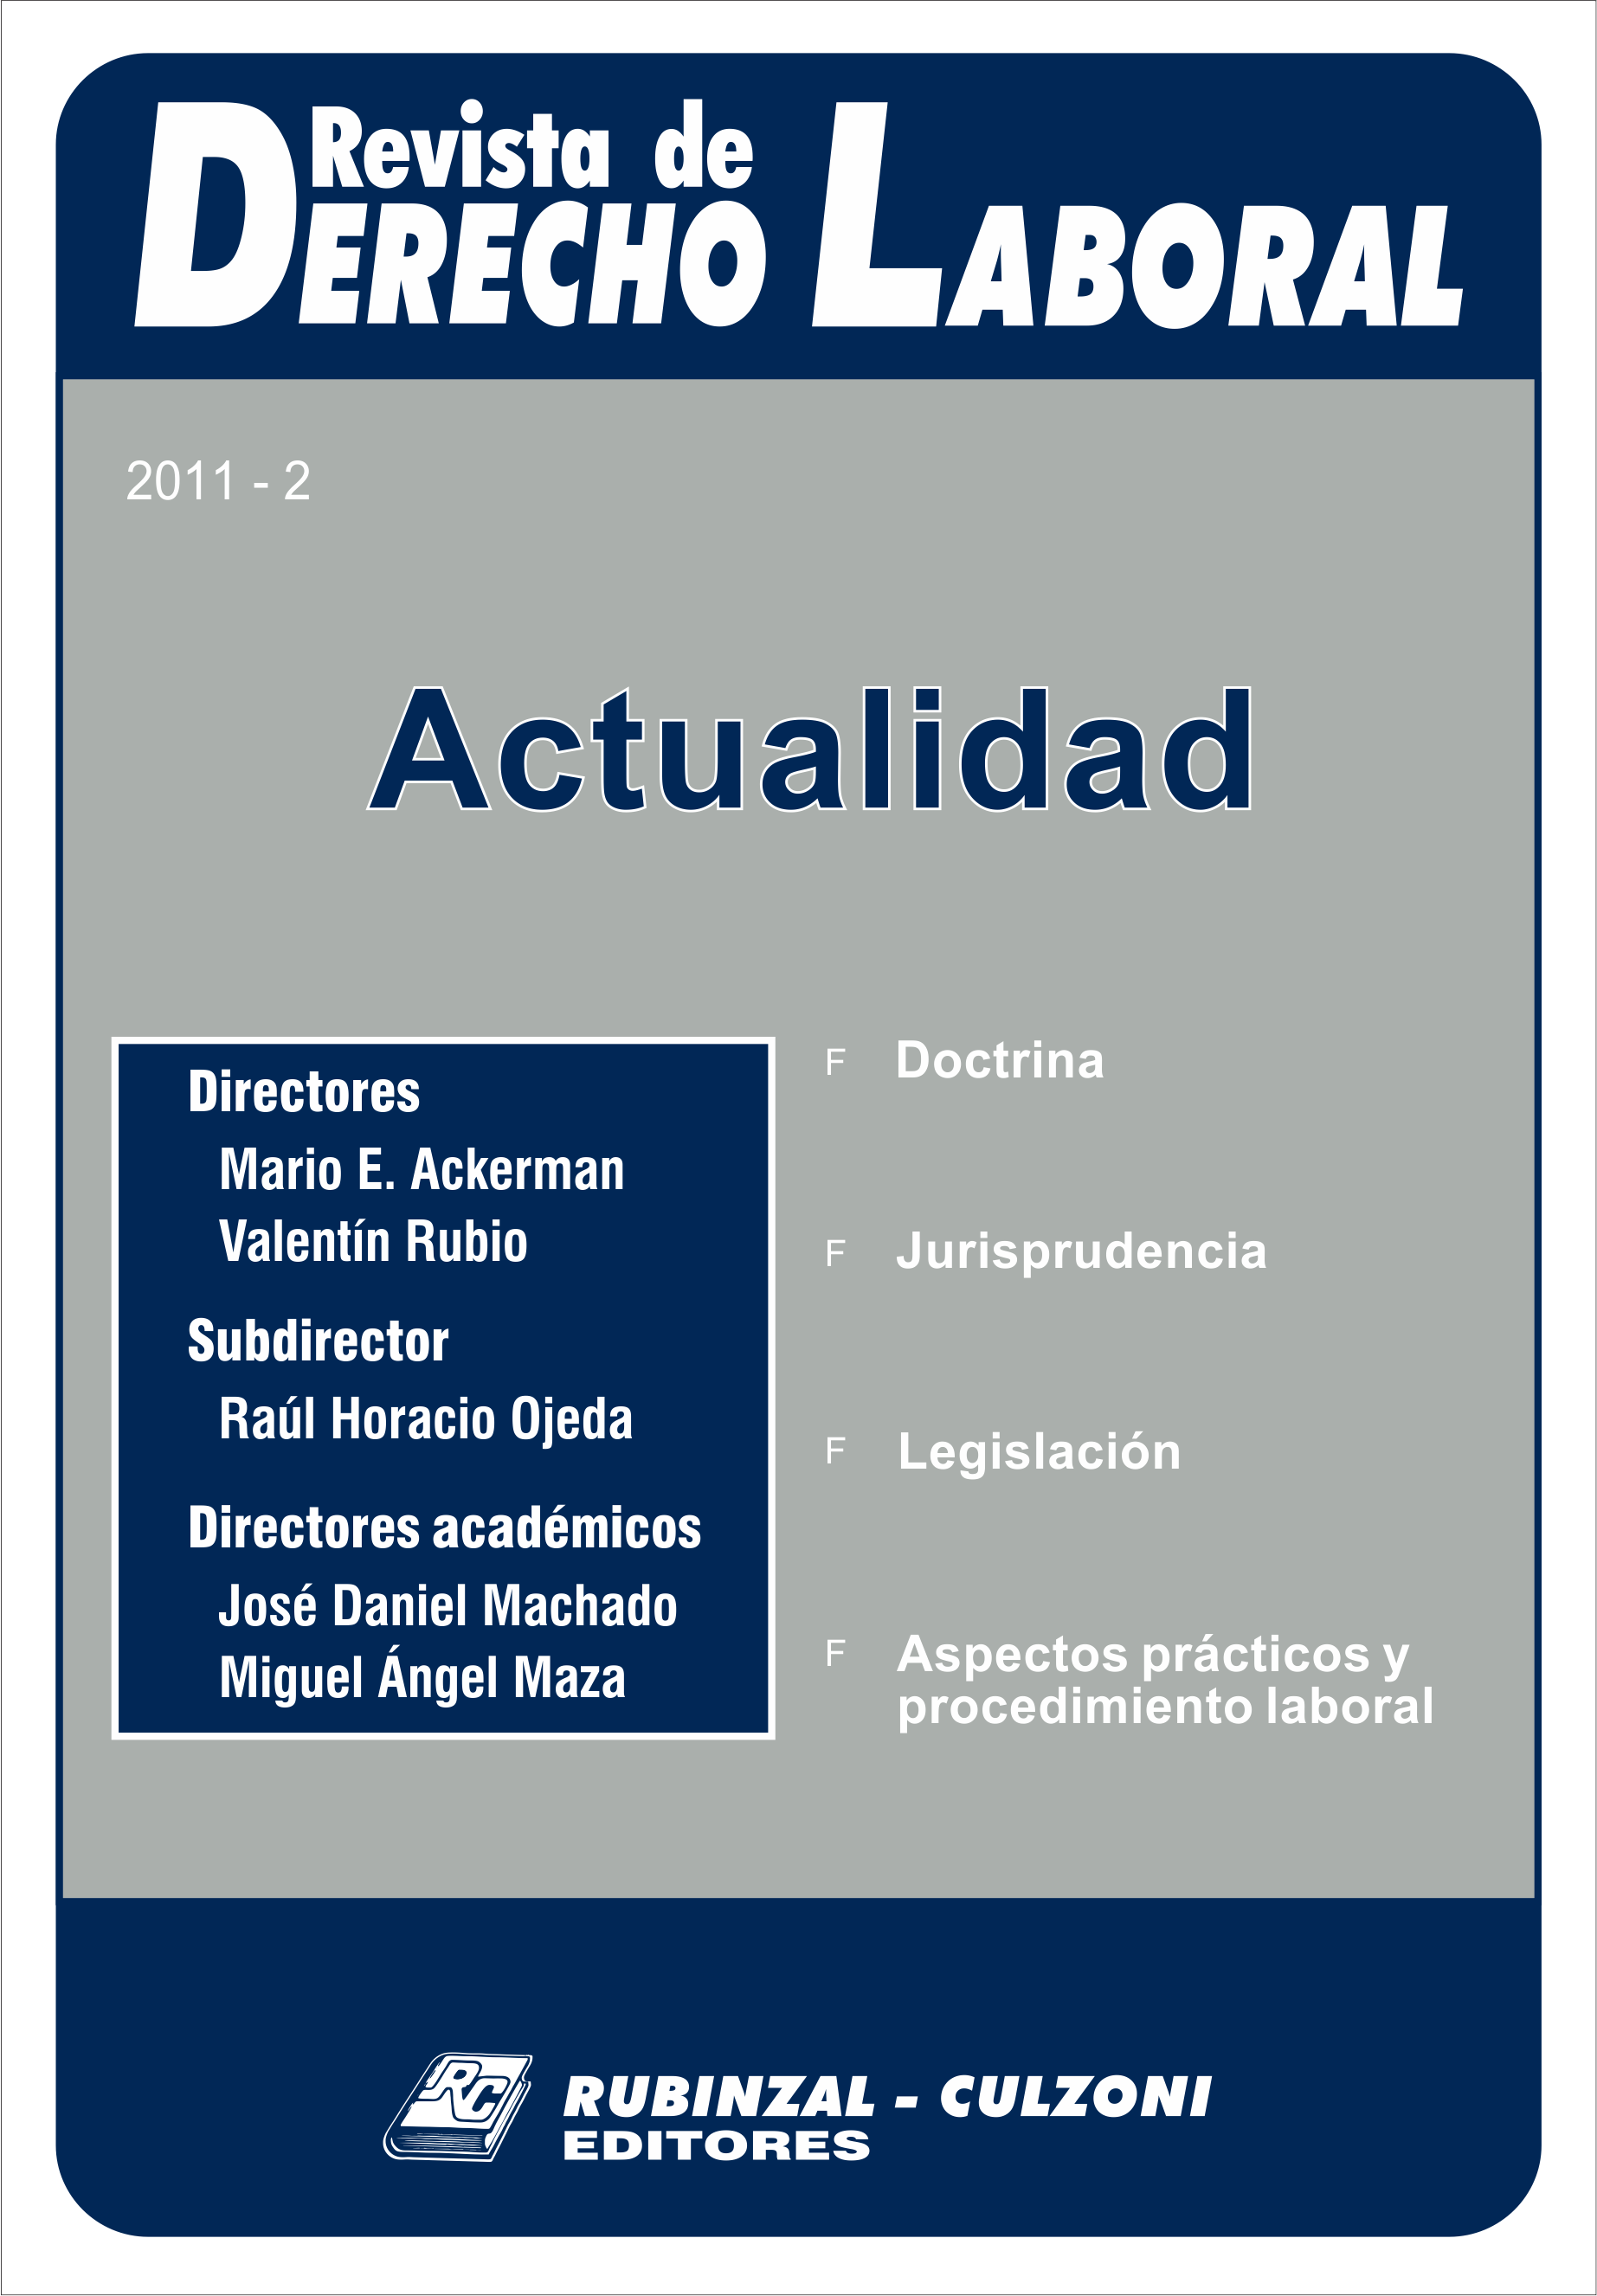 Revista de Derecho Laboral Actualidad - Año 2011 - 2.